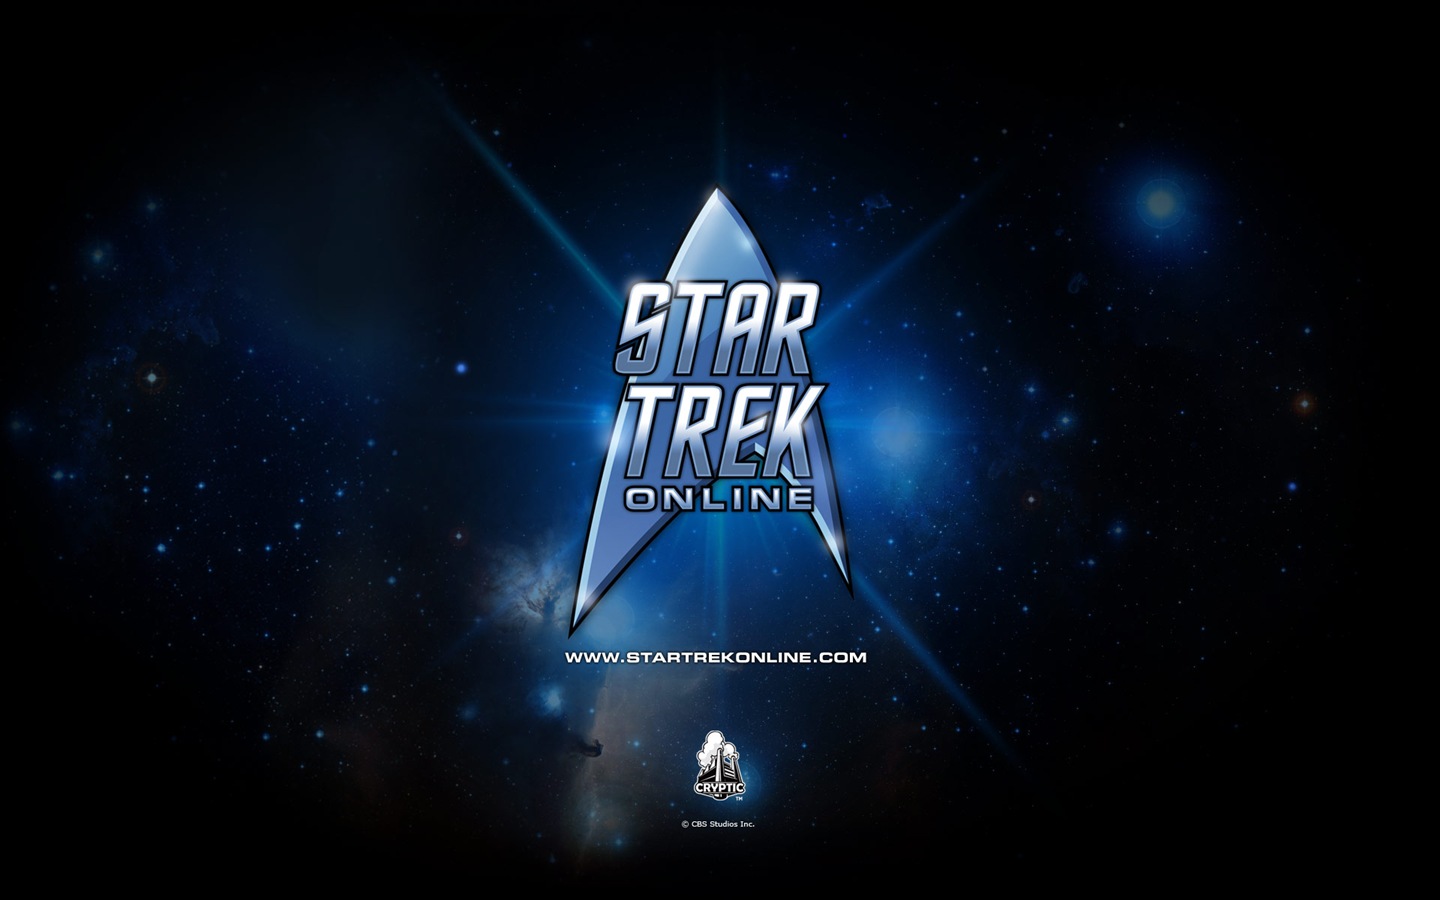 Star Trek Online 星际迷航在线 游戏高清壁纸19 - 1440x900